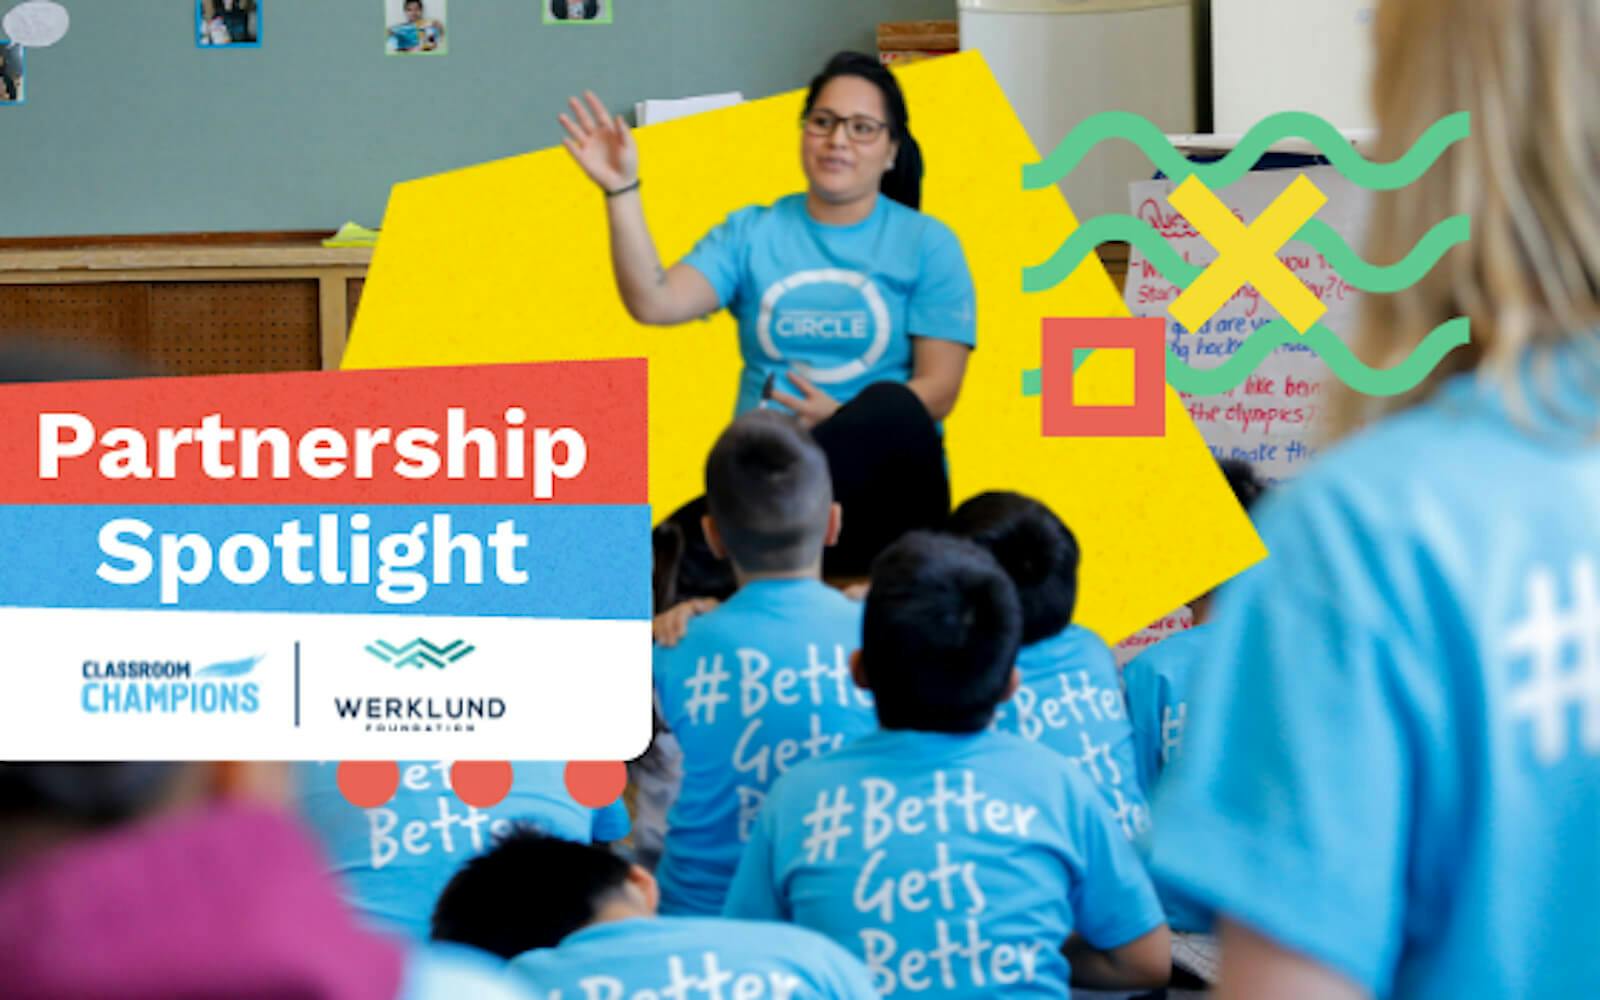 A teacher in a blue shirt, teaching a class alongside the text 'Partnership Spotlight'